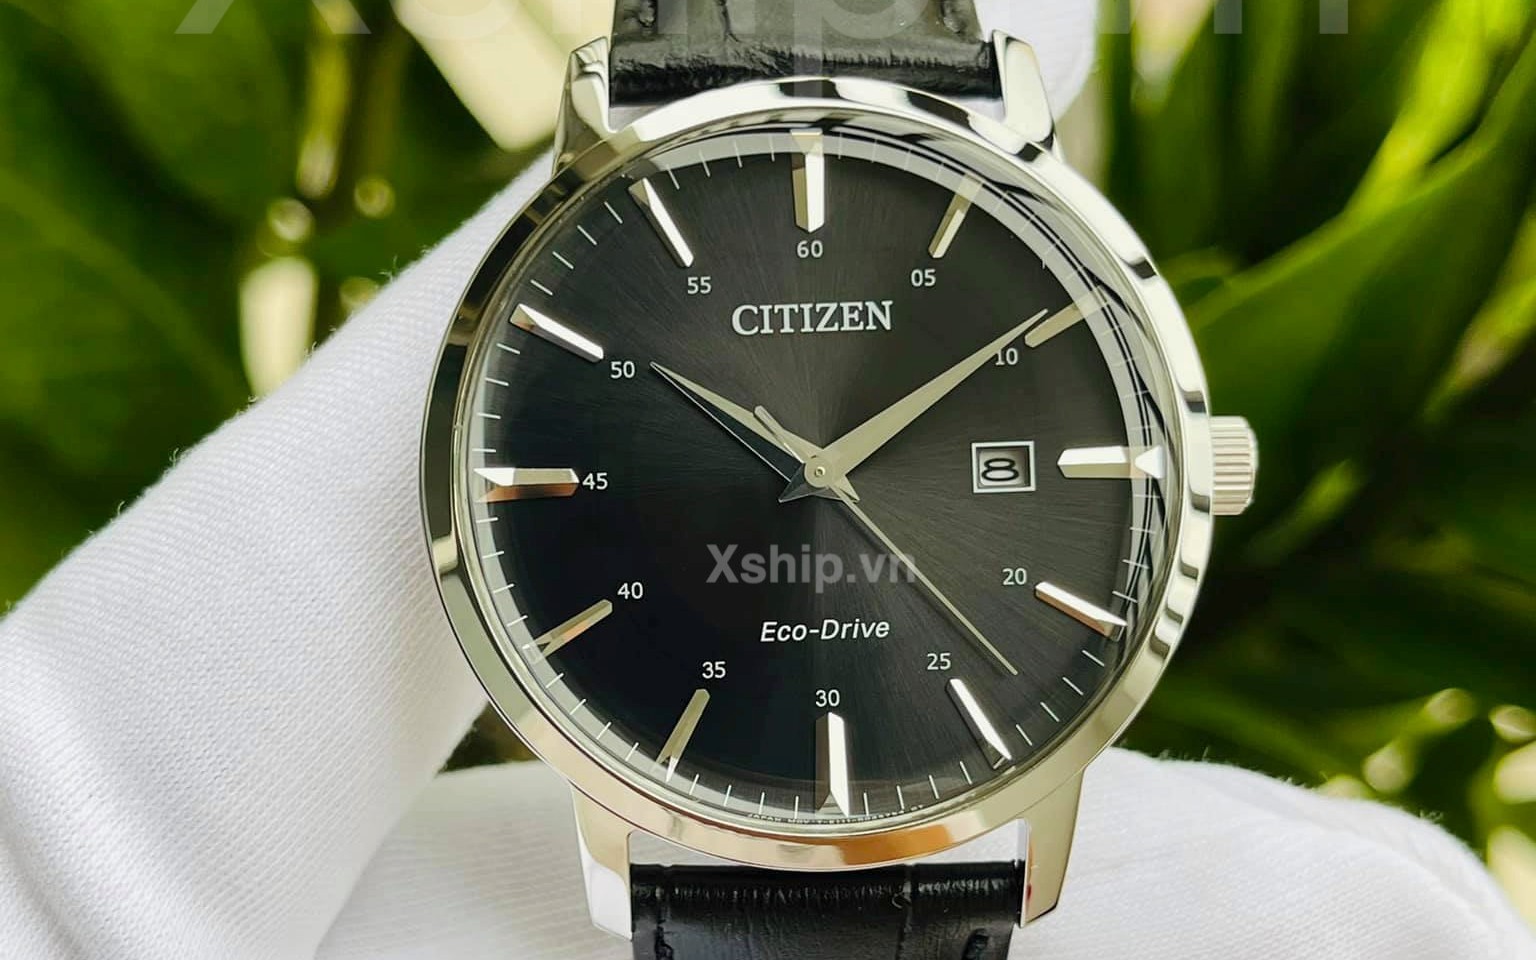 Bộ sưu tập đồng hồ Citizen BM746 đang có sẵn tại Xship.vn